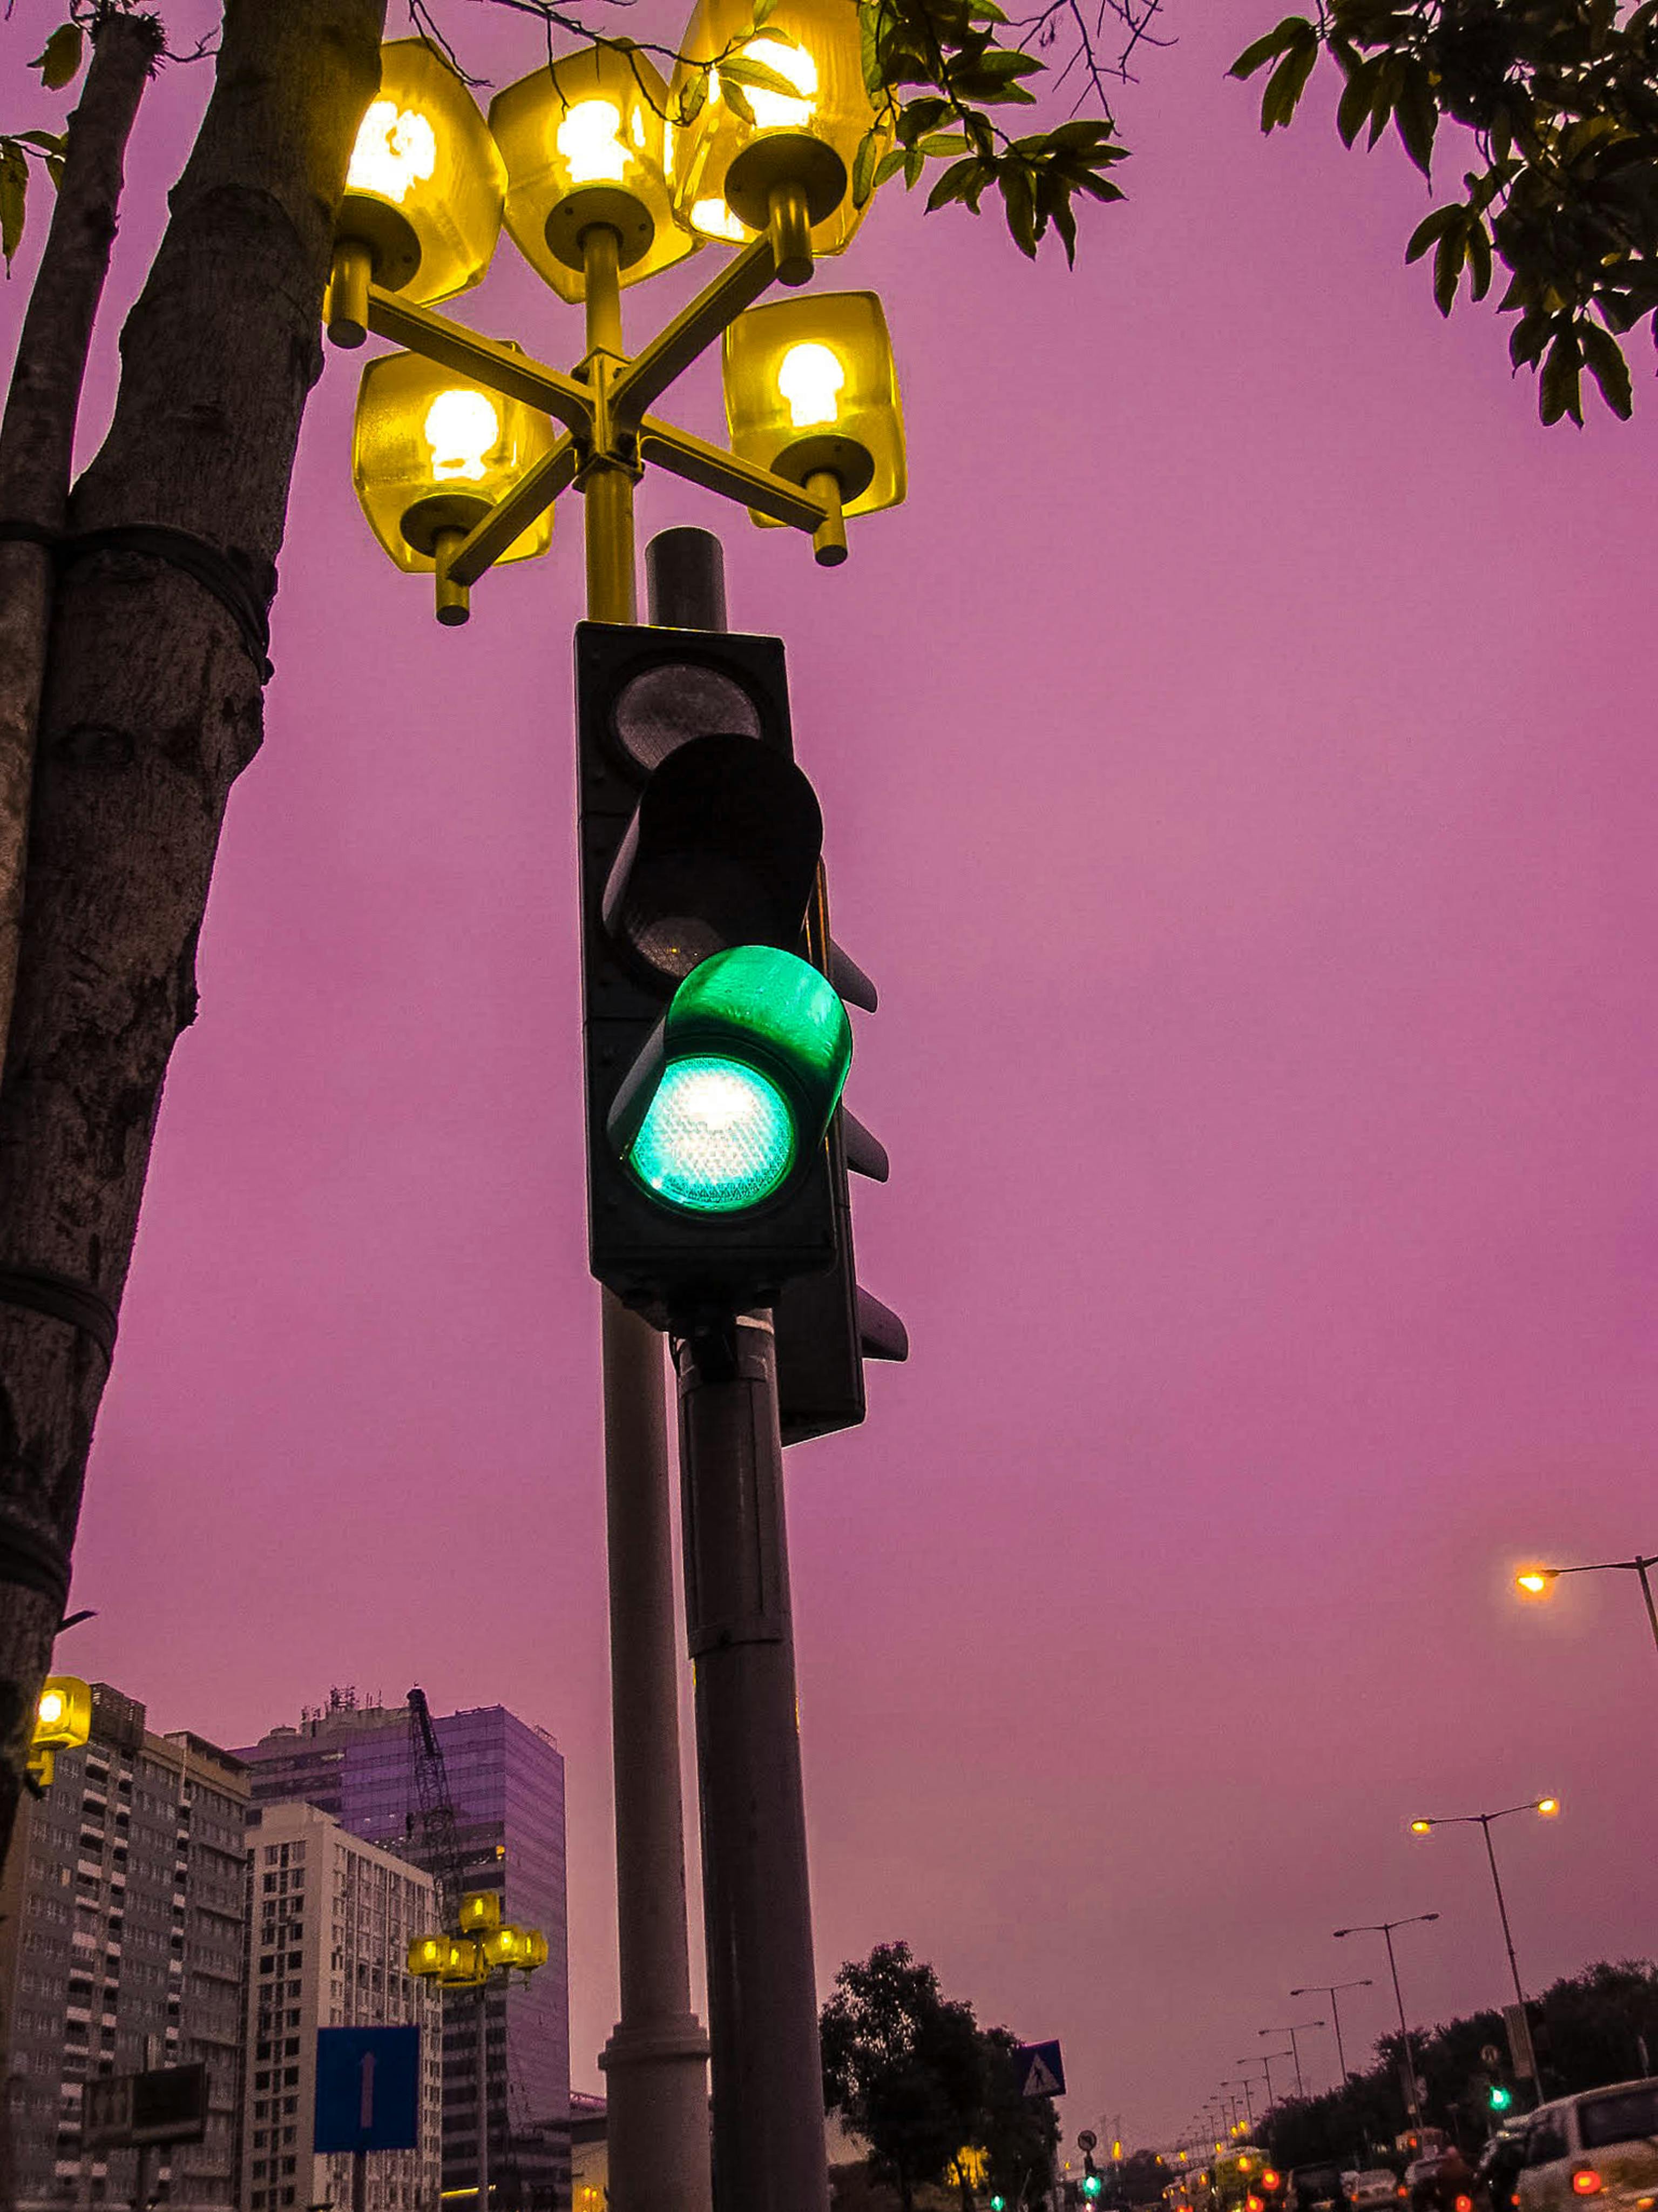 Black Traffic Light: Những thước phim về đèn giao thông luôn khiến ta cảm thấy áp lực và căng thẳng. Nhưng hình ảnh black traffic light làm ngược lại - một không gian đen trắng yên lặng, giúp cho bạn thả lỏng và tận hưởng những phút giây bình yên.